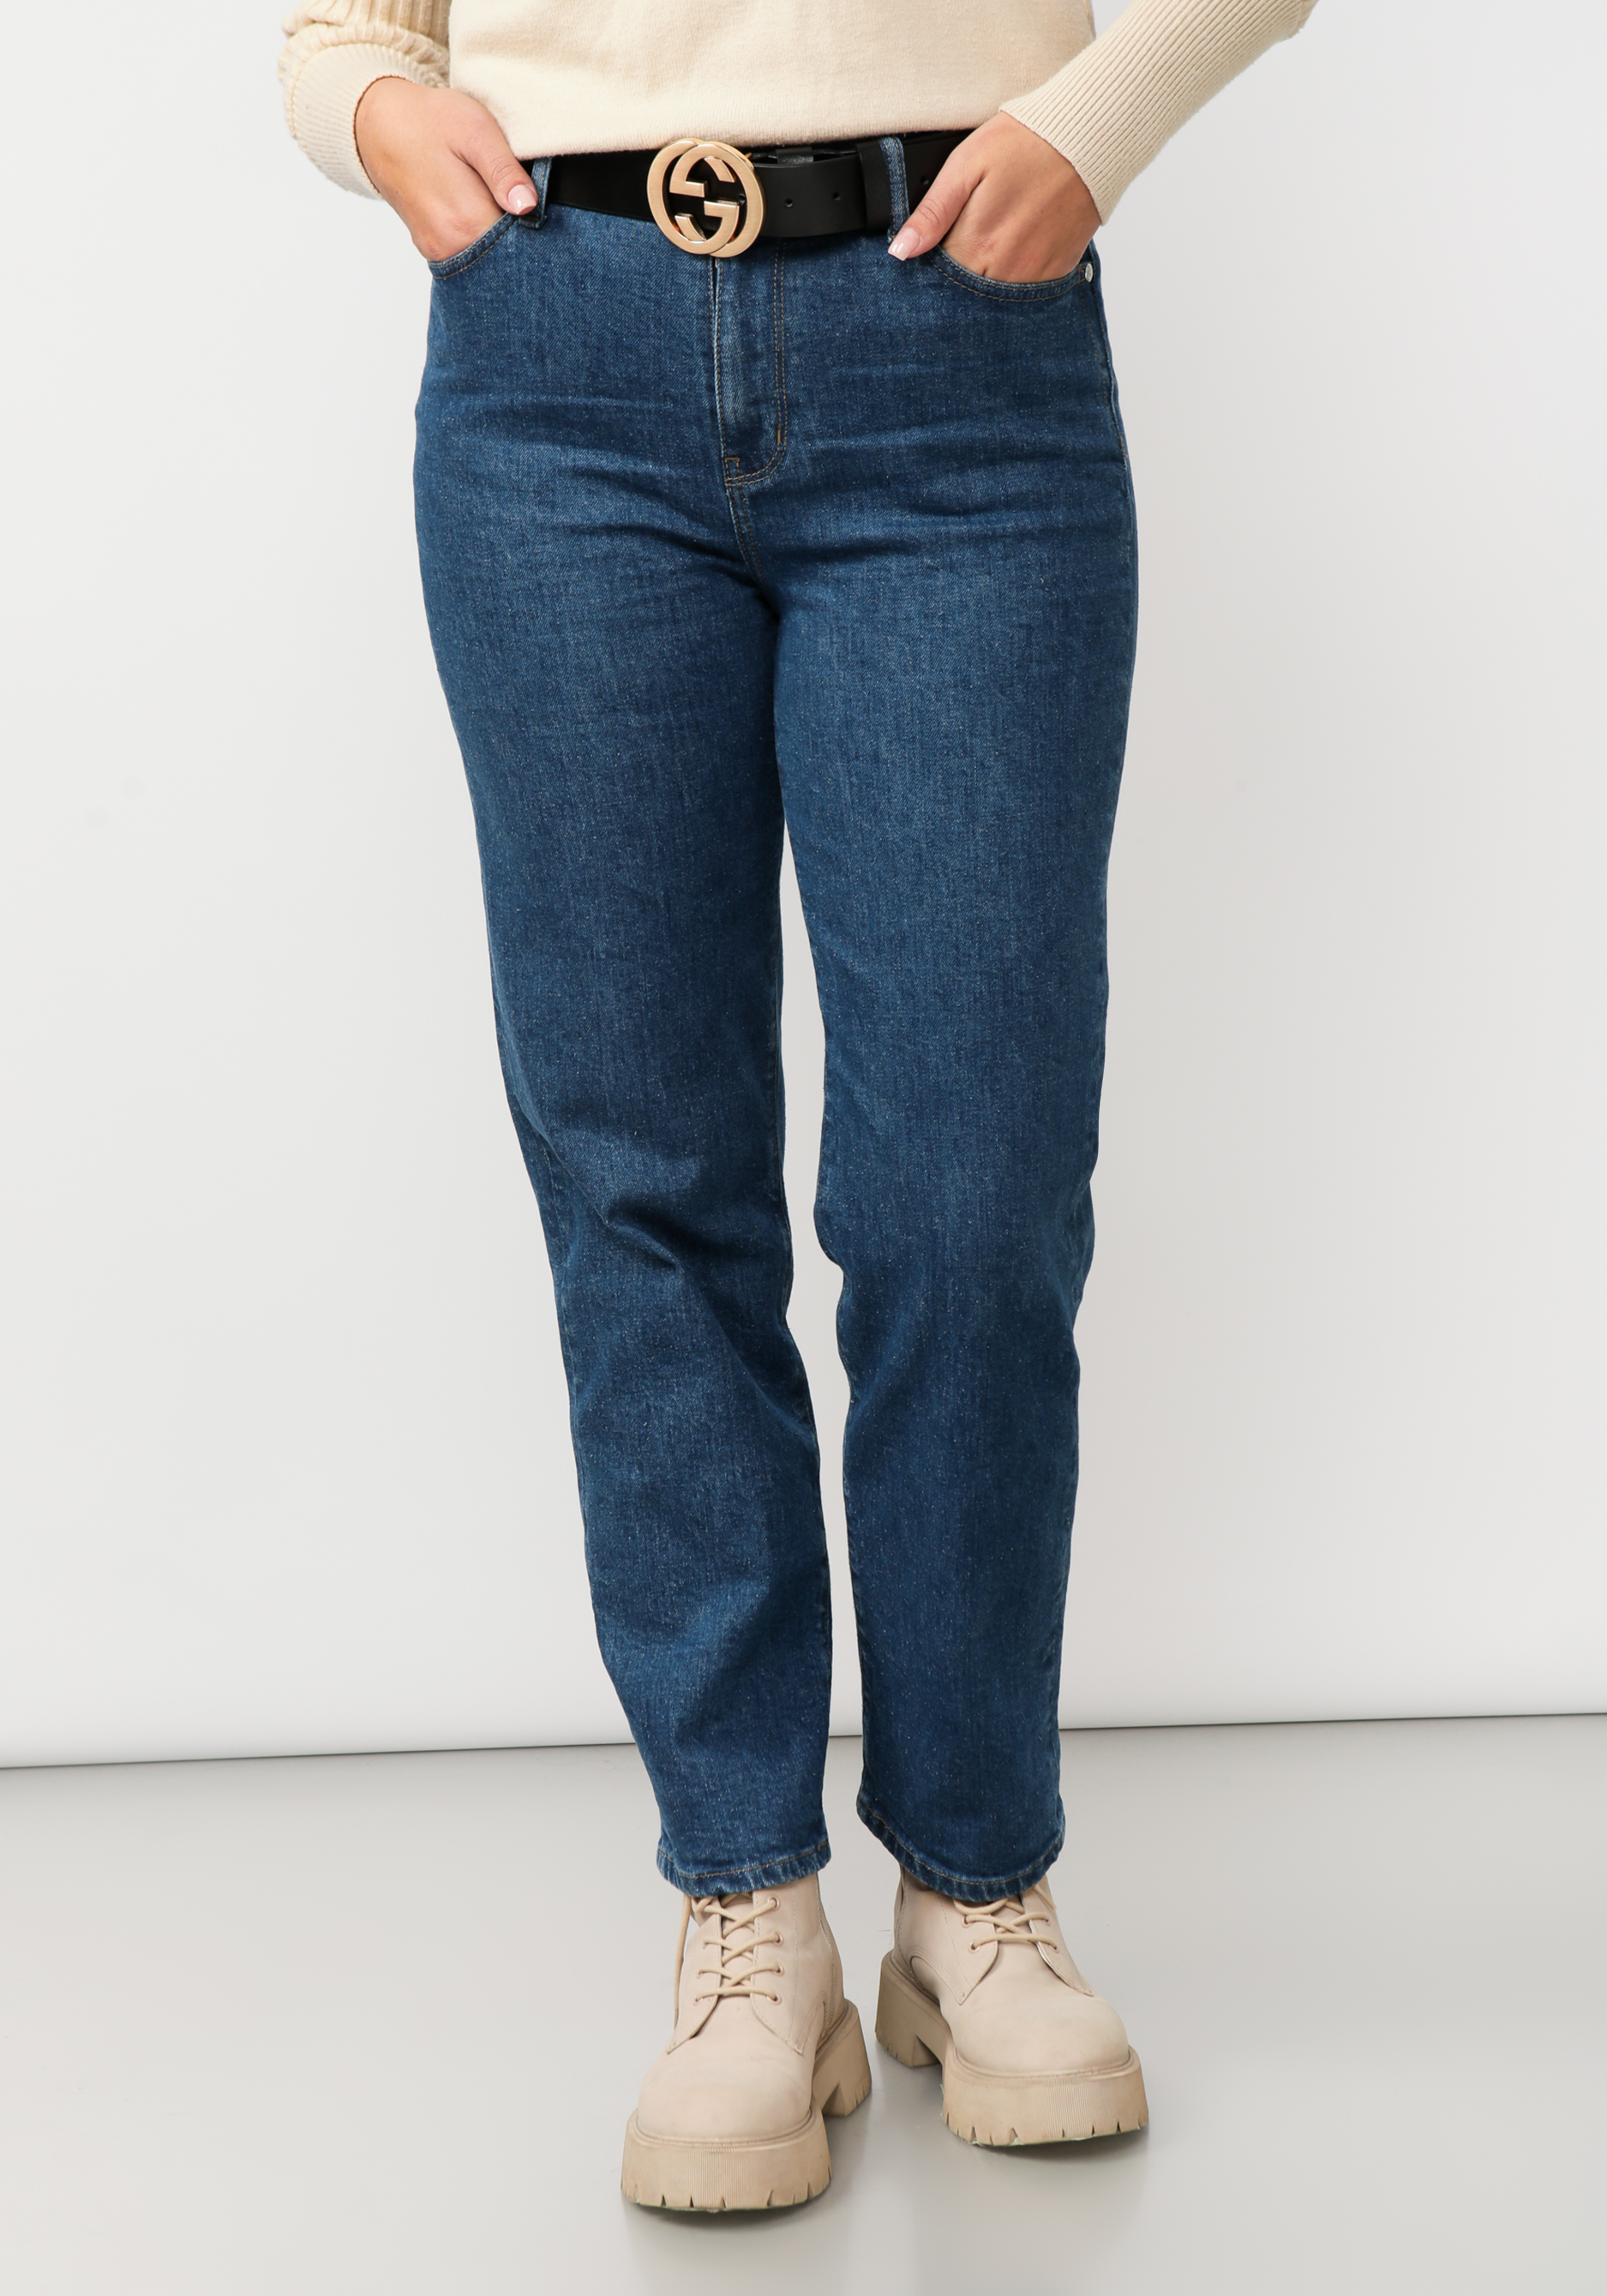 джинсы прямого кроя с комфортным поясом Джинсы прямого кроя с вышивкой на кармане